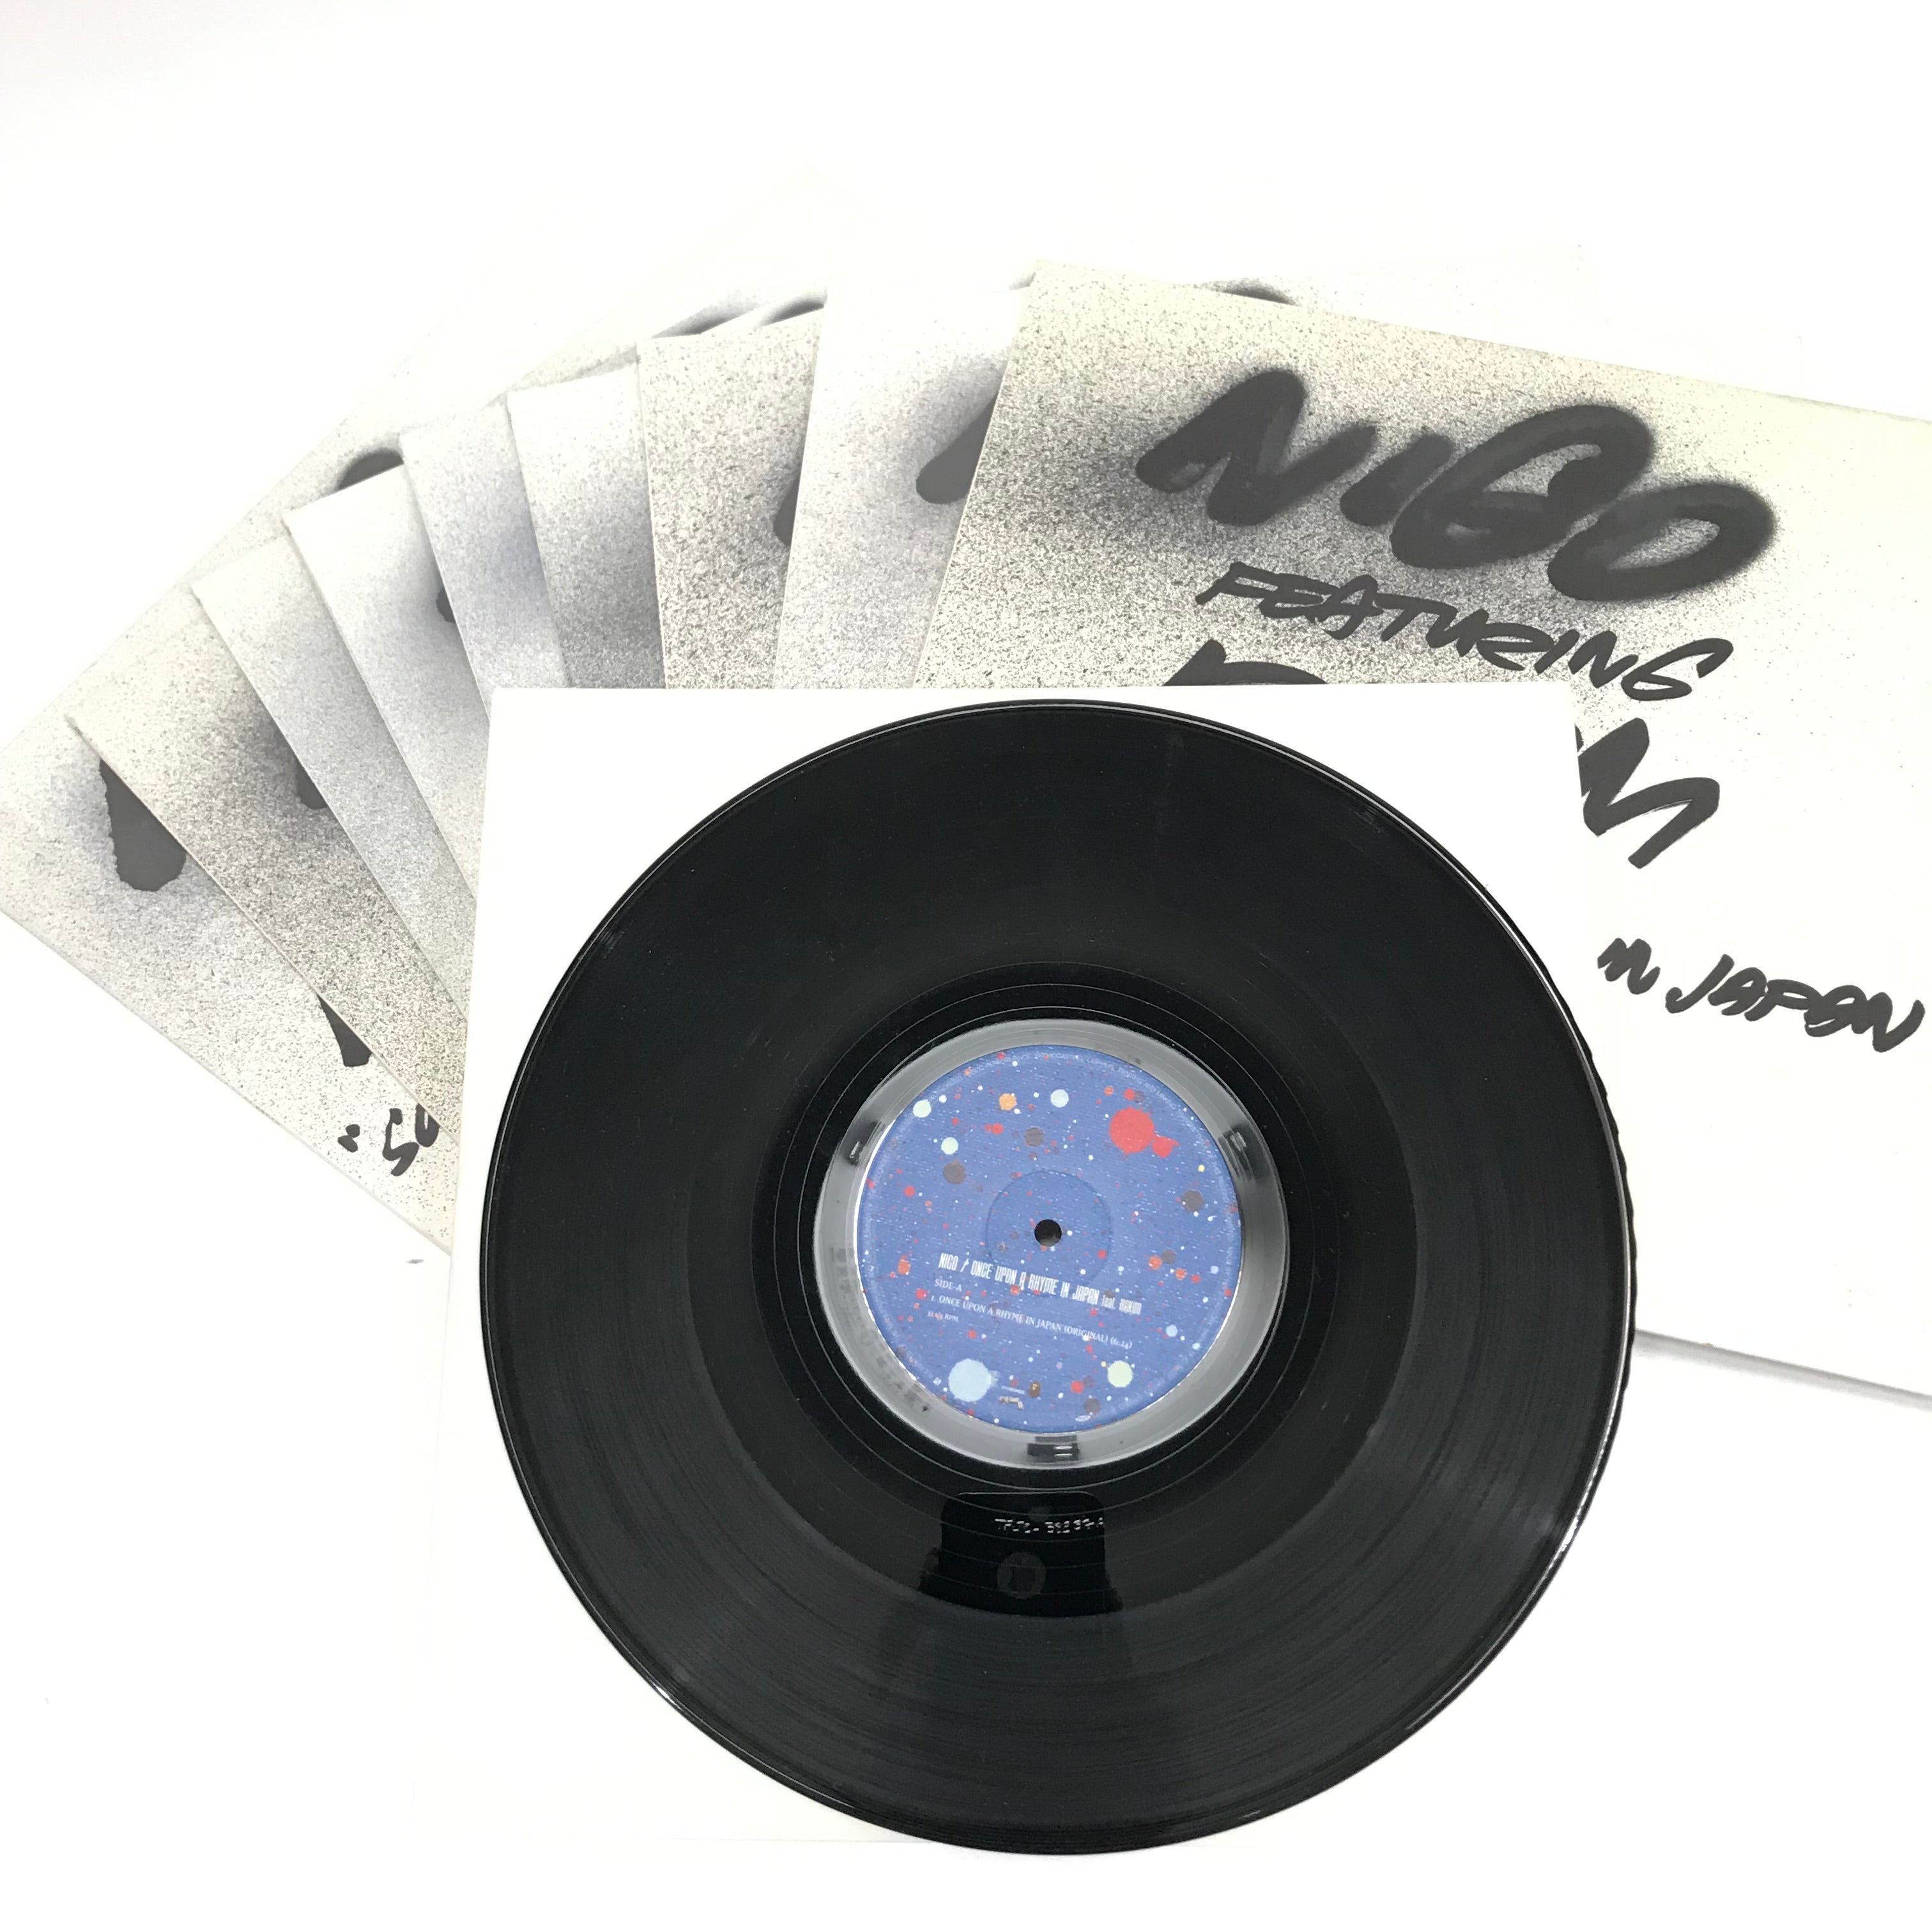 A Bathing Ape Bape Nigo Ape Sounds 'Featuring' 9 Record Vinyl 